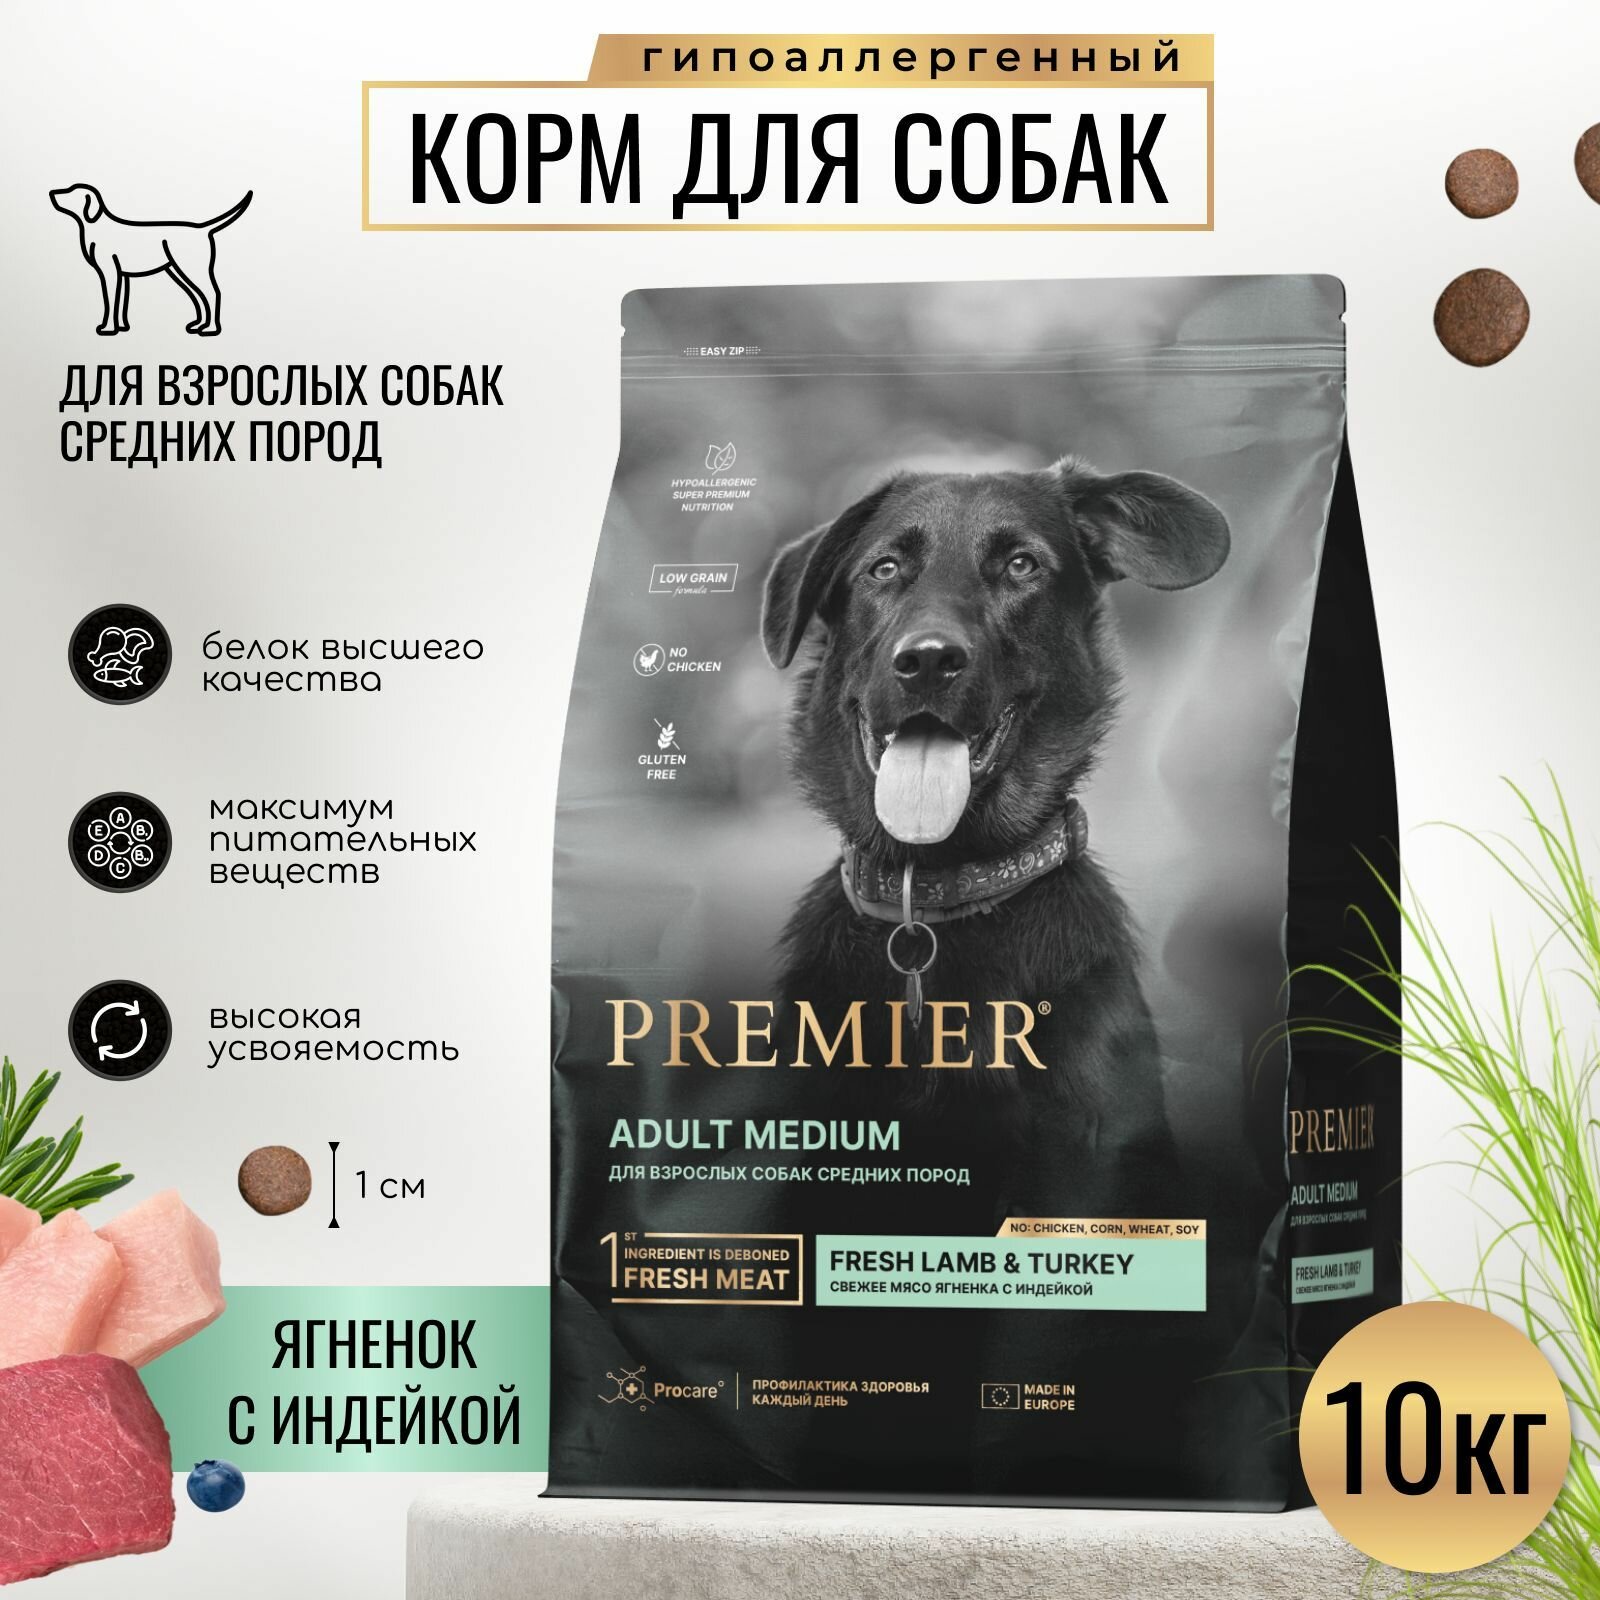 Сухой корм PREMIER для взрослых собак средних пород ягнёнок с индейкой 10кг.